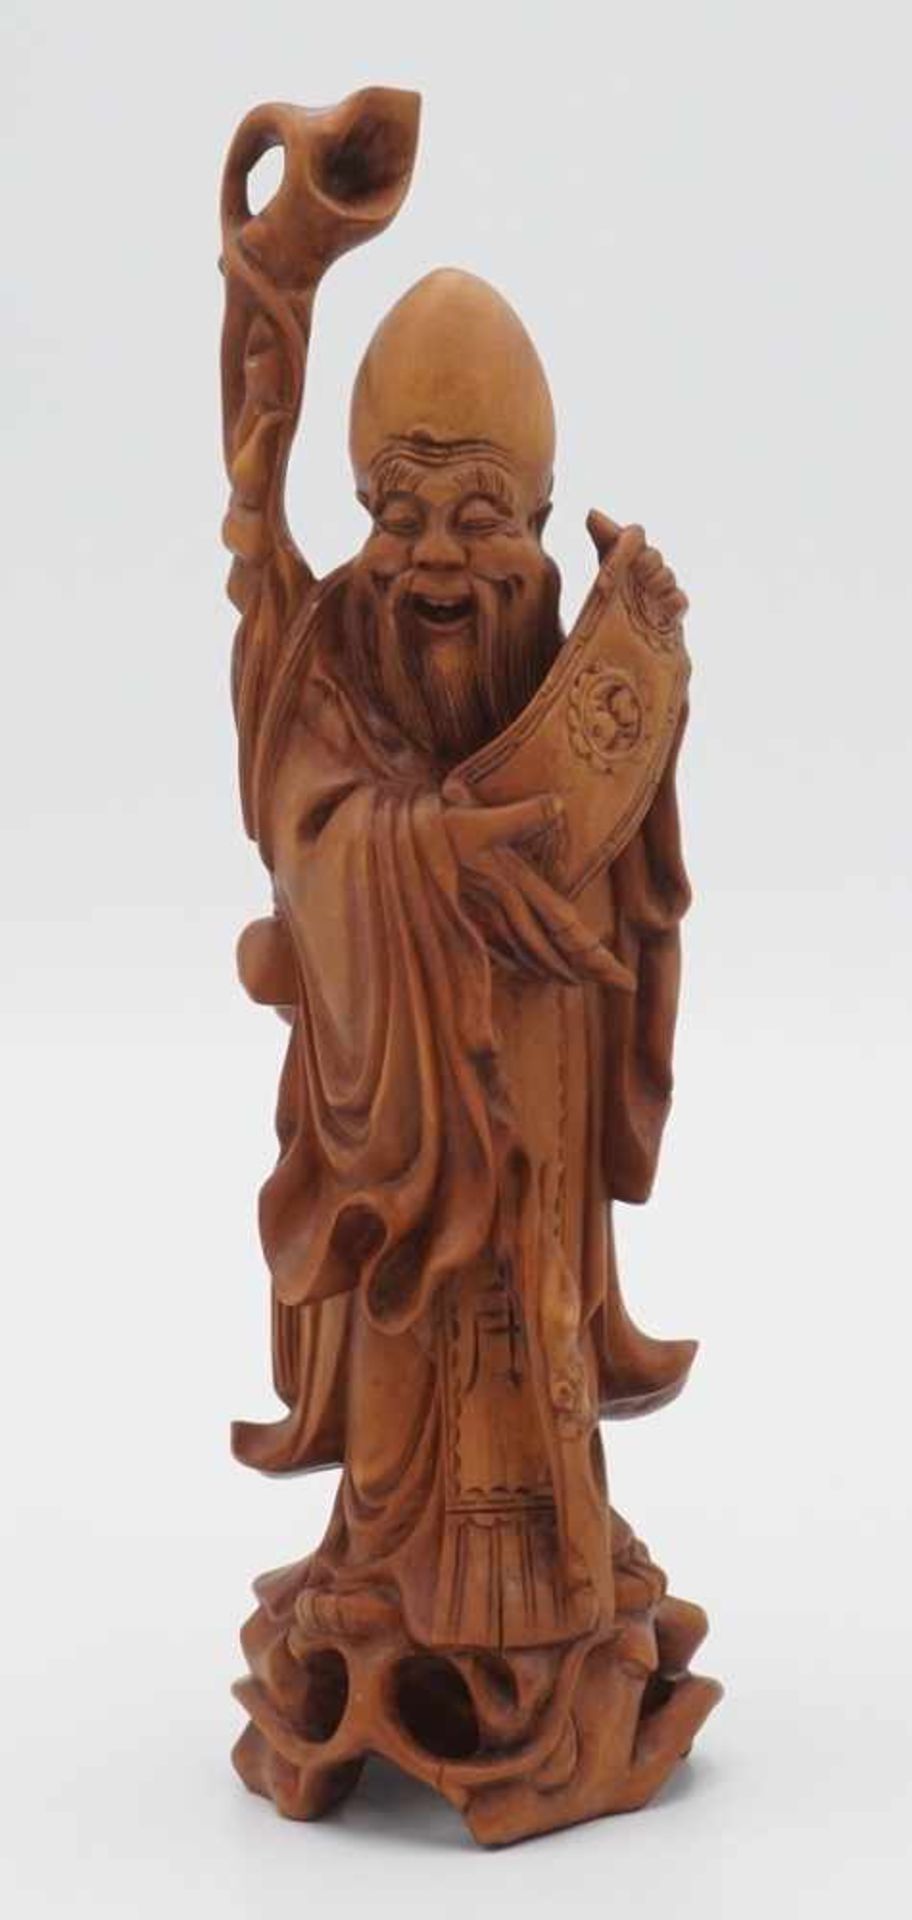 Figur eines Gelehrten in der Art des Shou Xing, China, ca. 19./20. Jh.